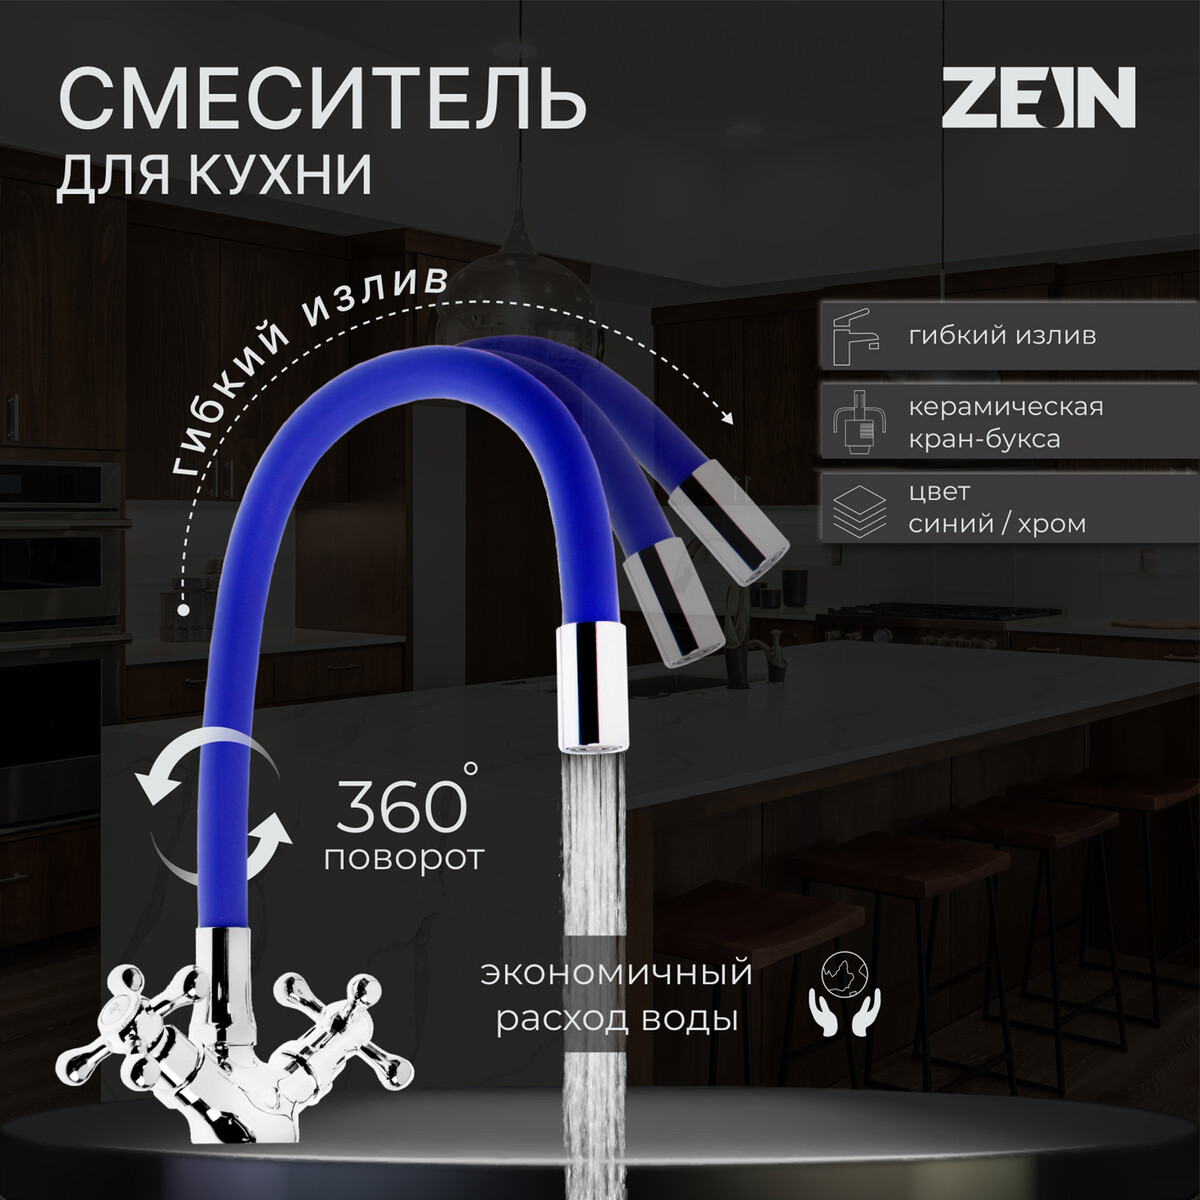 Смеситель для кухни zein z2105, двухвентильный, силиконовый излив, синий/хром смеситель hansgrohe logis для кухни